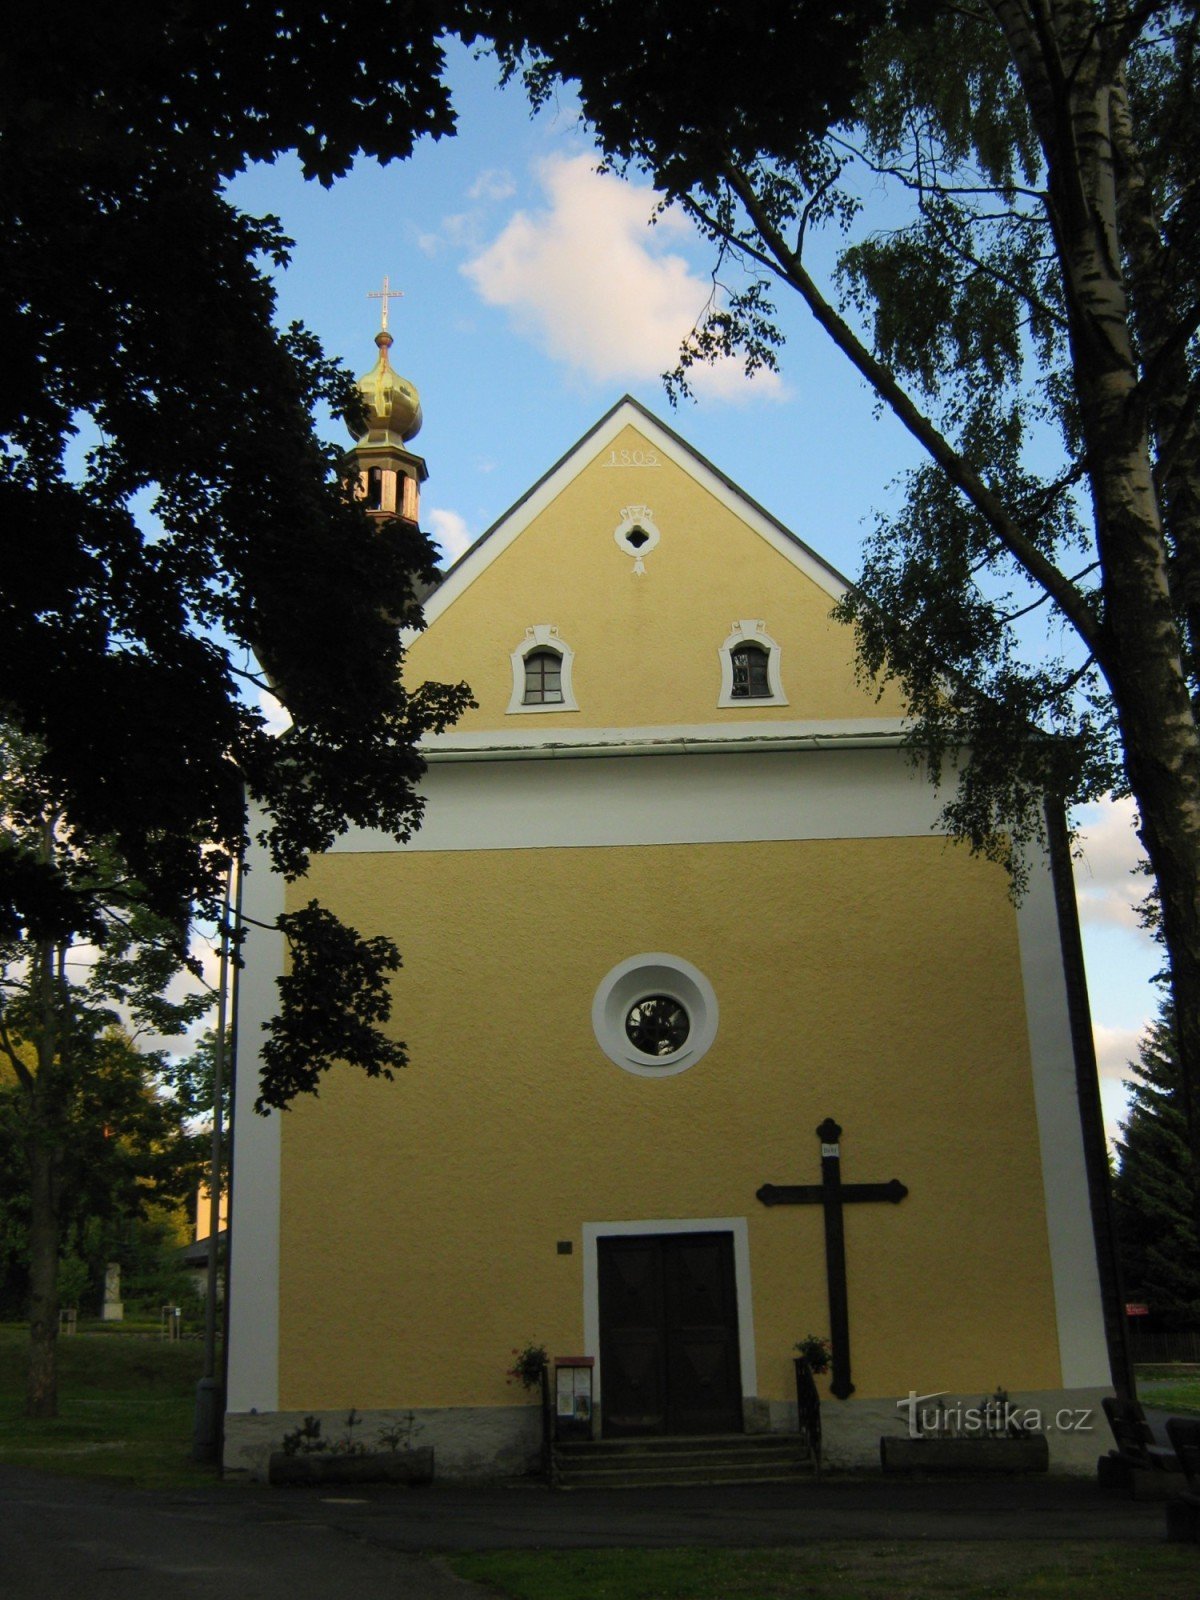 Srni - Nhà thờ St. Trinity